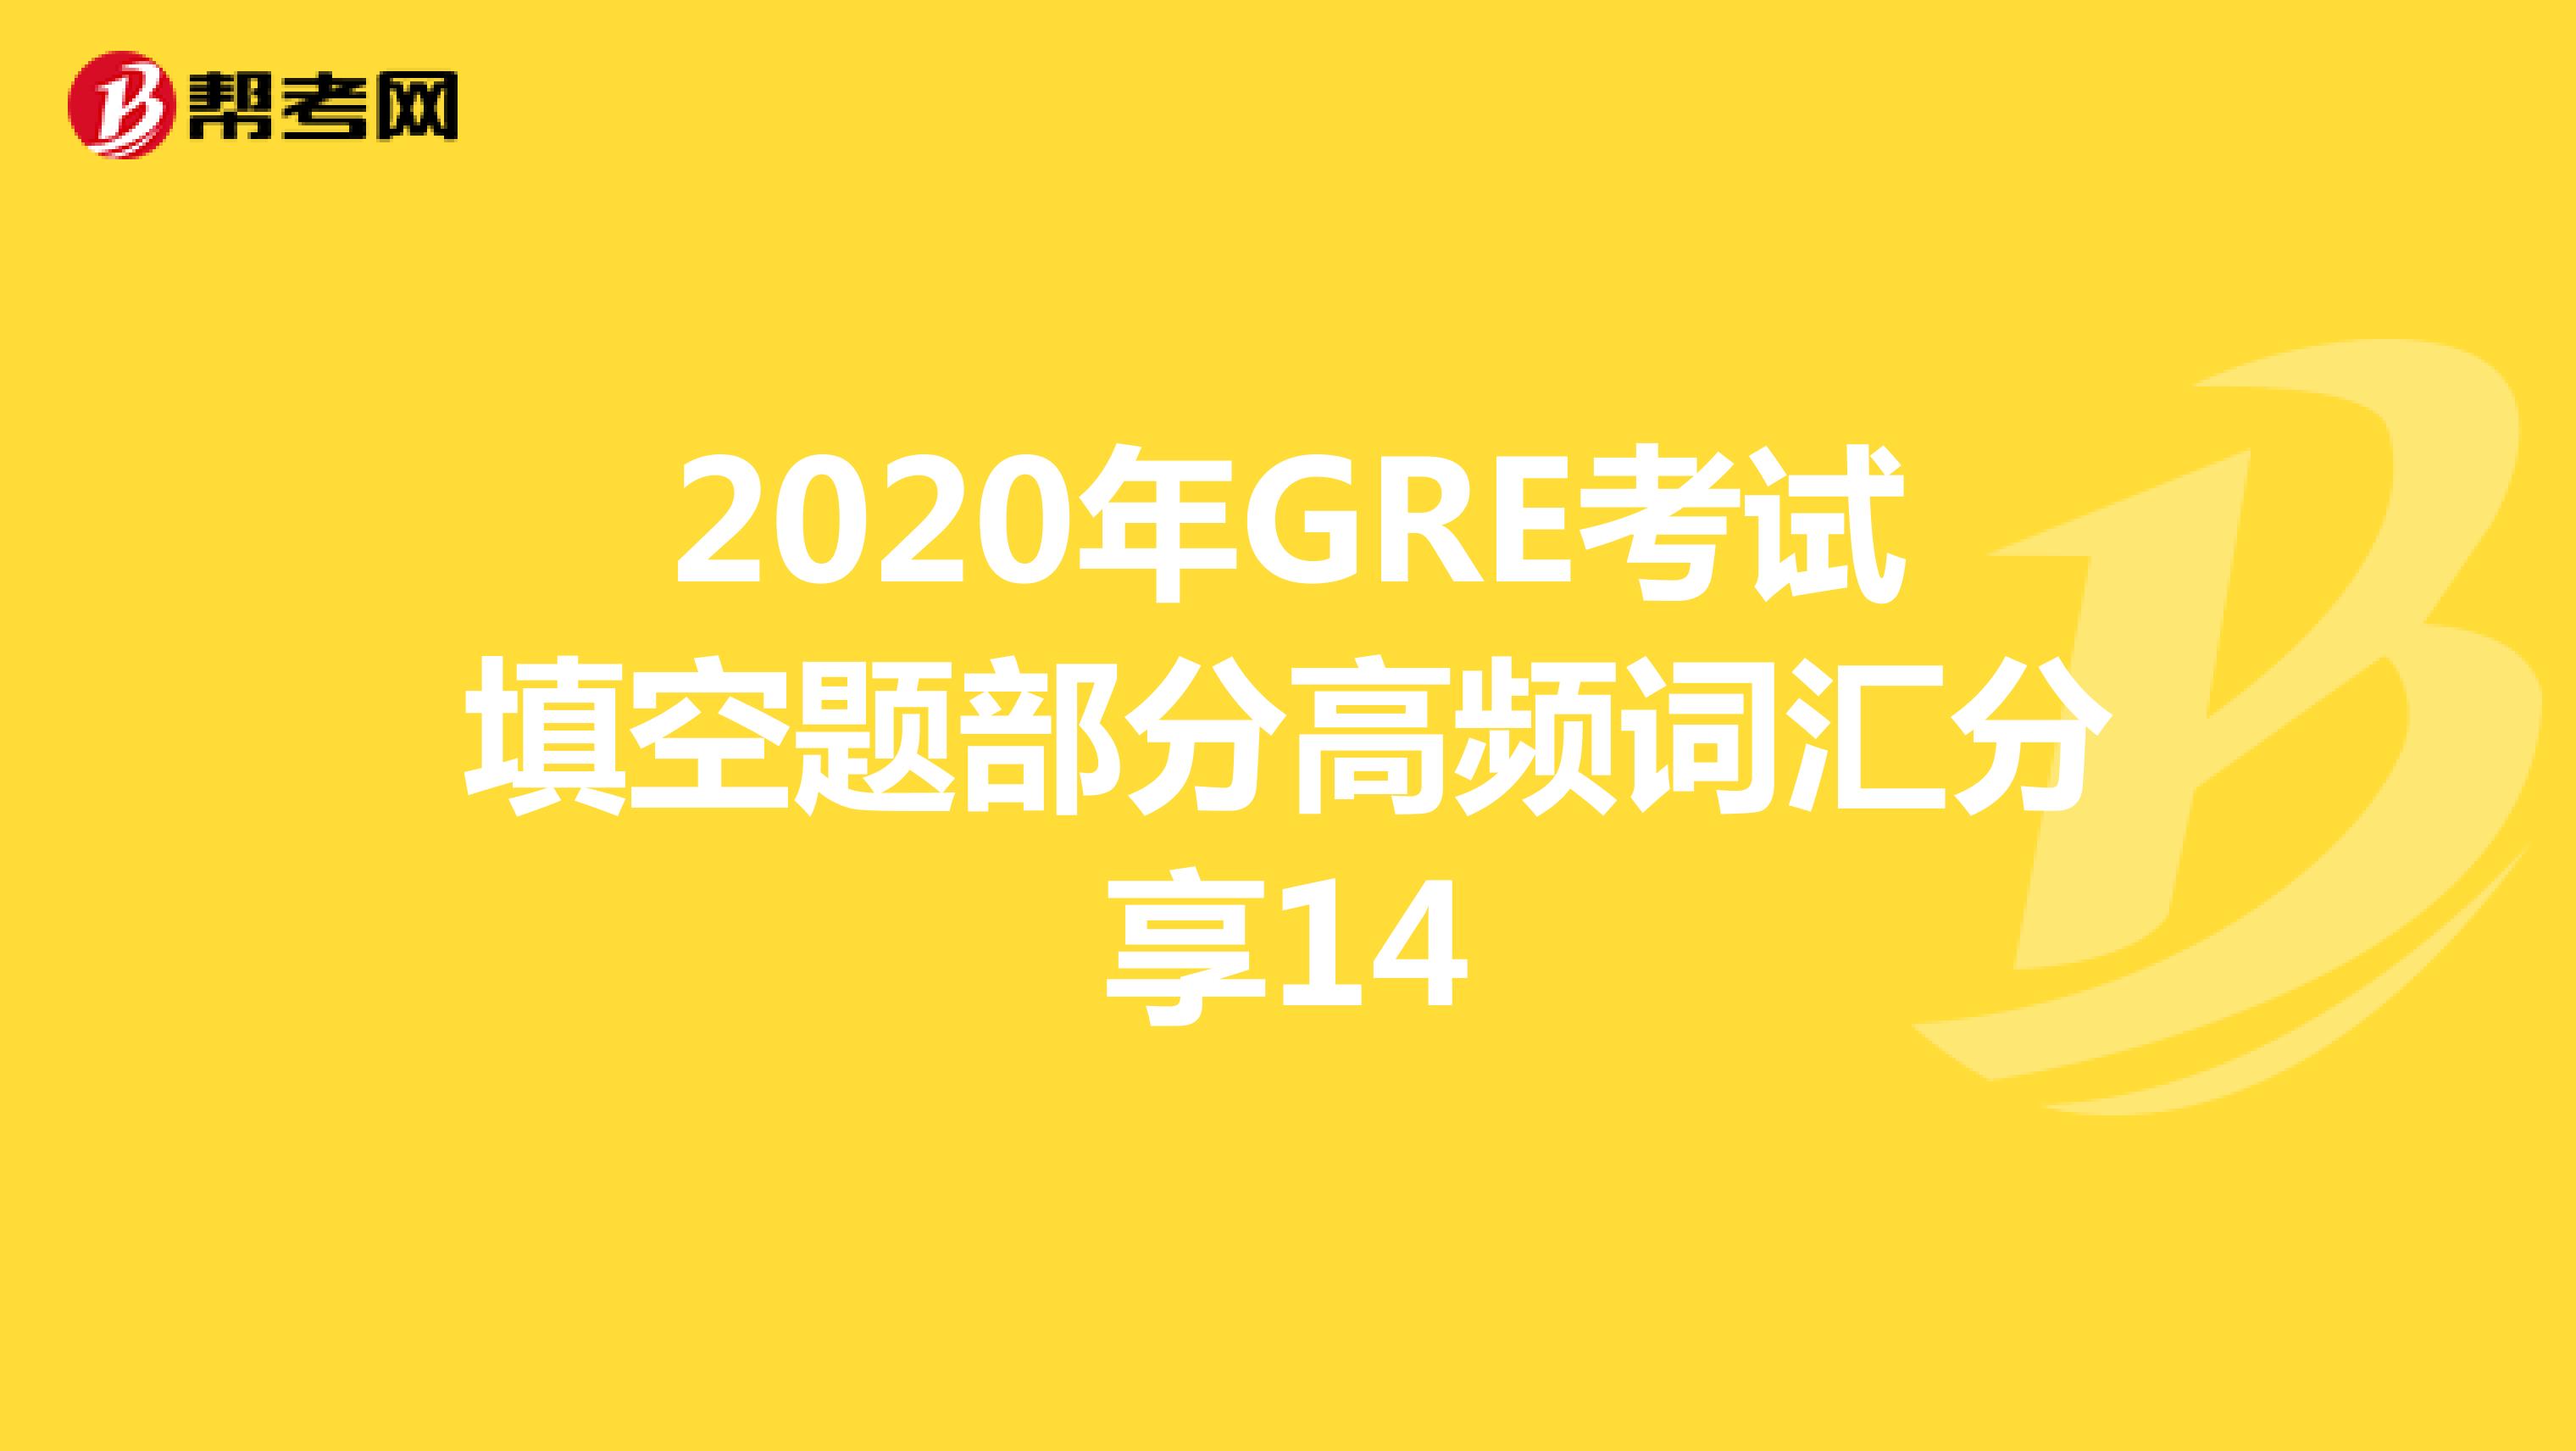 2020年GRE考试填空题部分高频词汇分享14